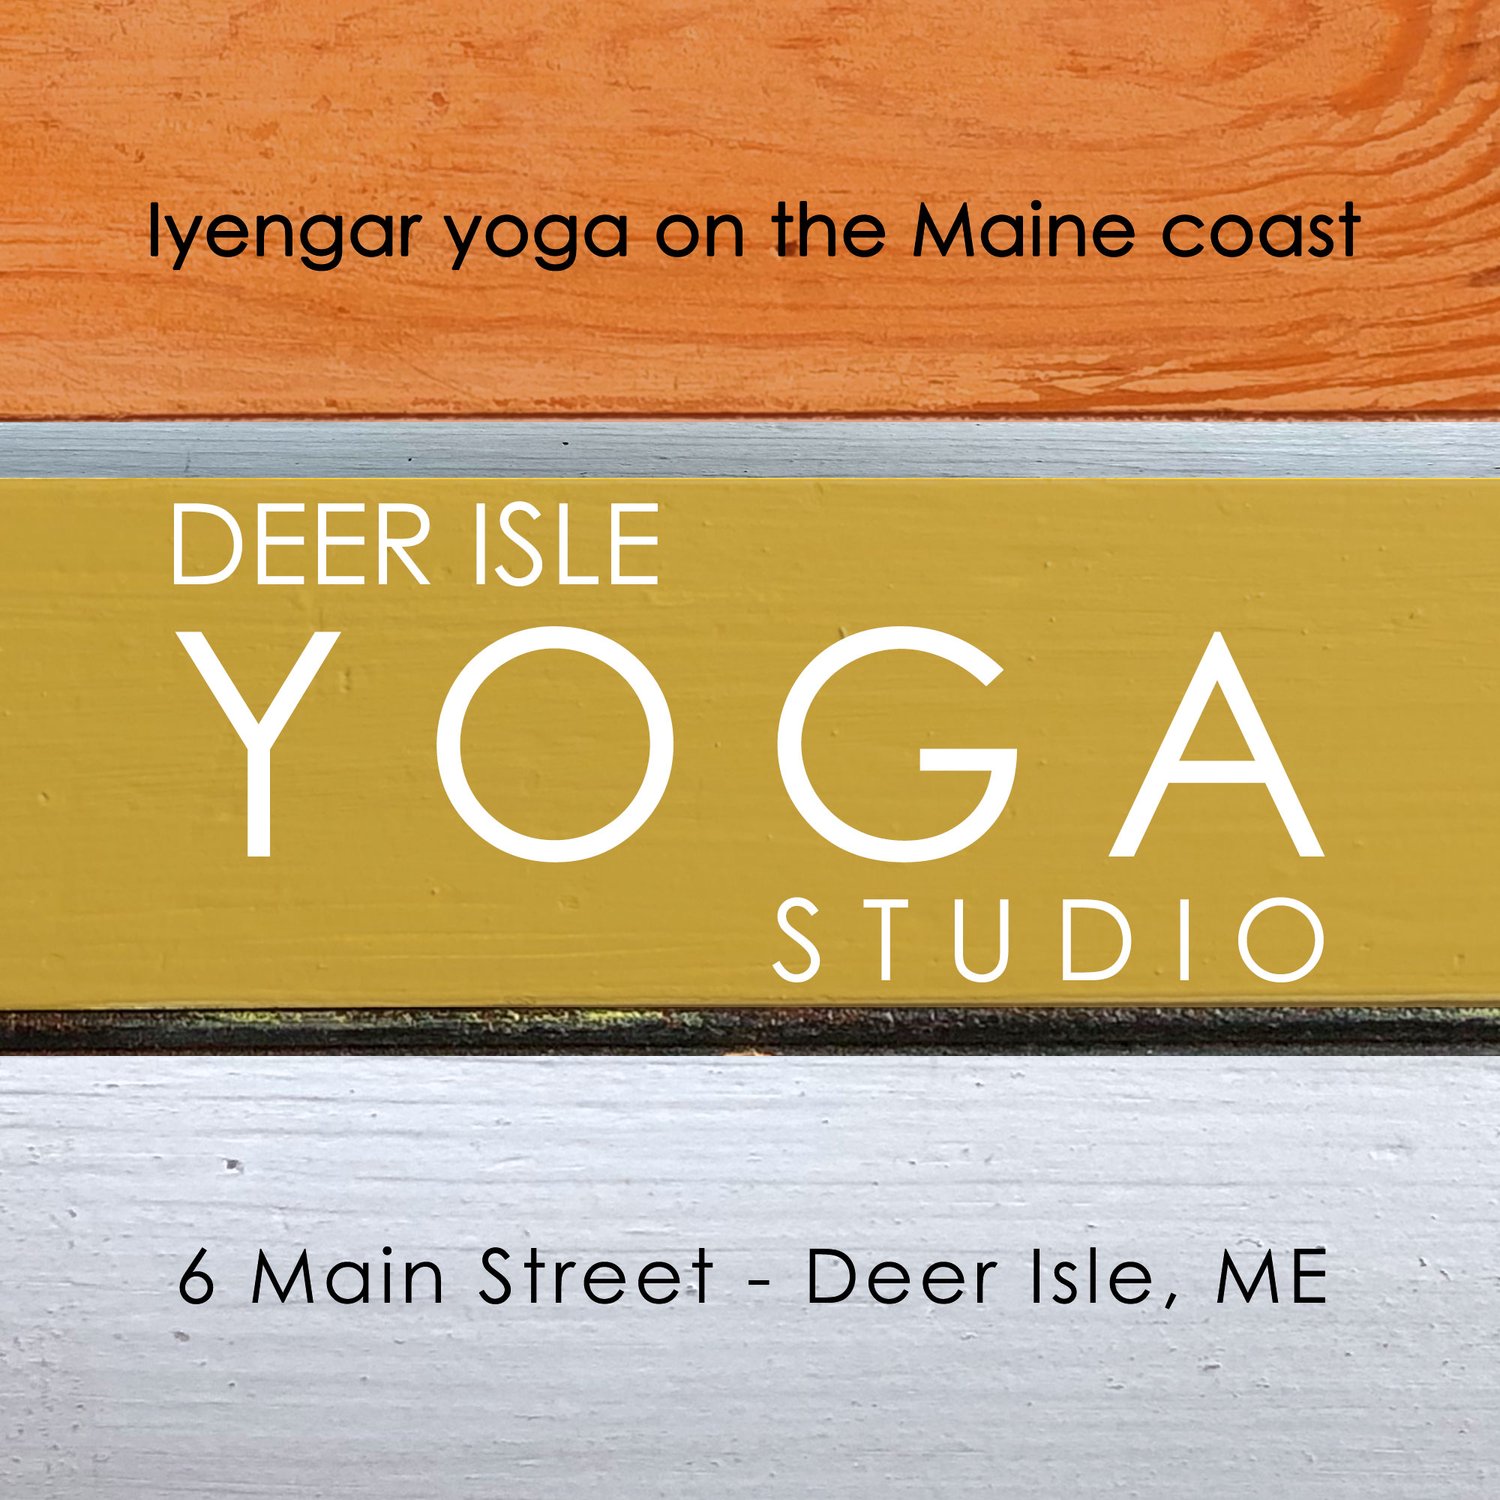 Deer Isle Yoga Studio